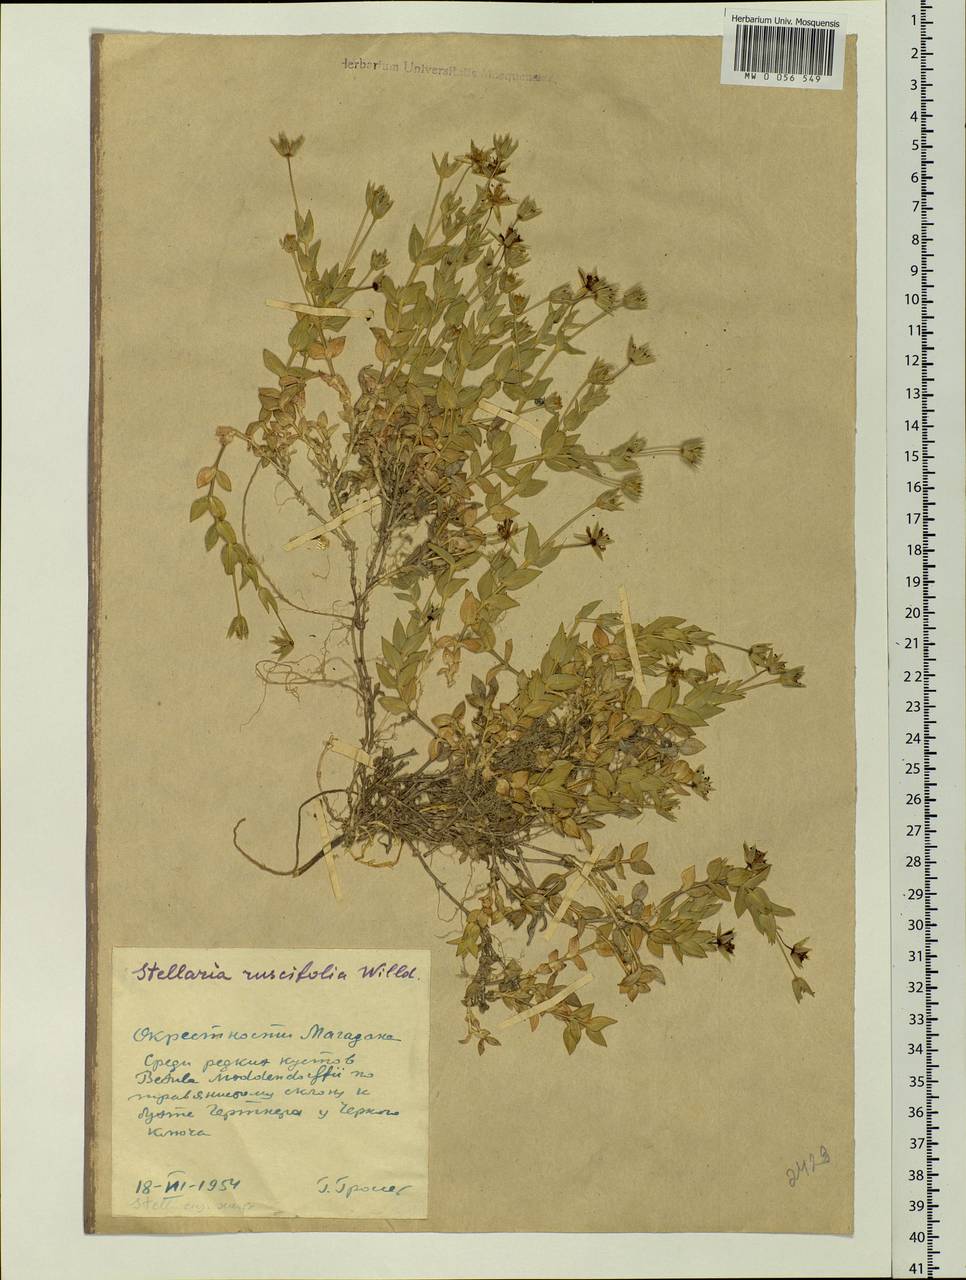 Stellaria ruscifolia Pall. ex Schltdl., Siberia, Chukotka & Kamchatka (S7) (Russia)